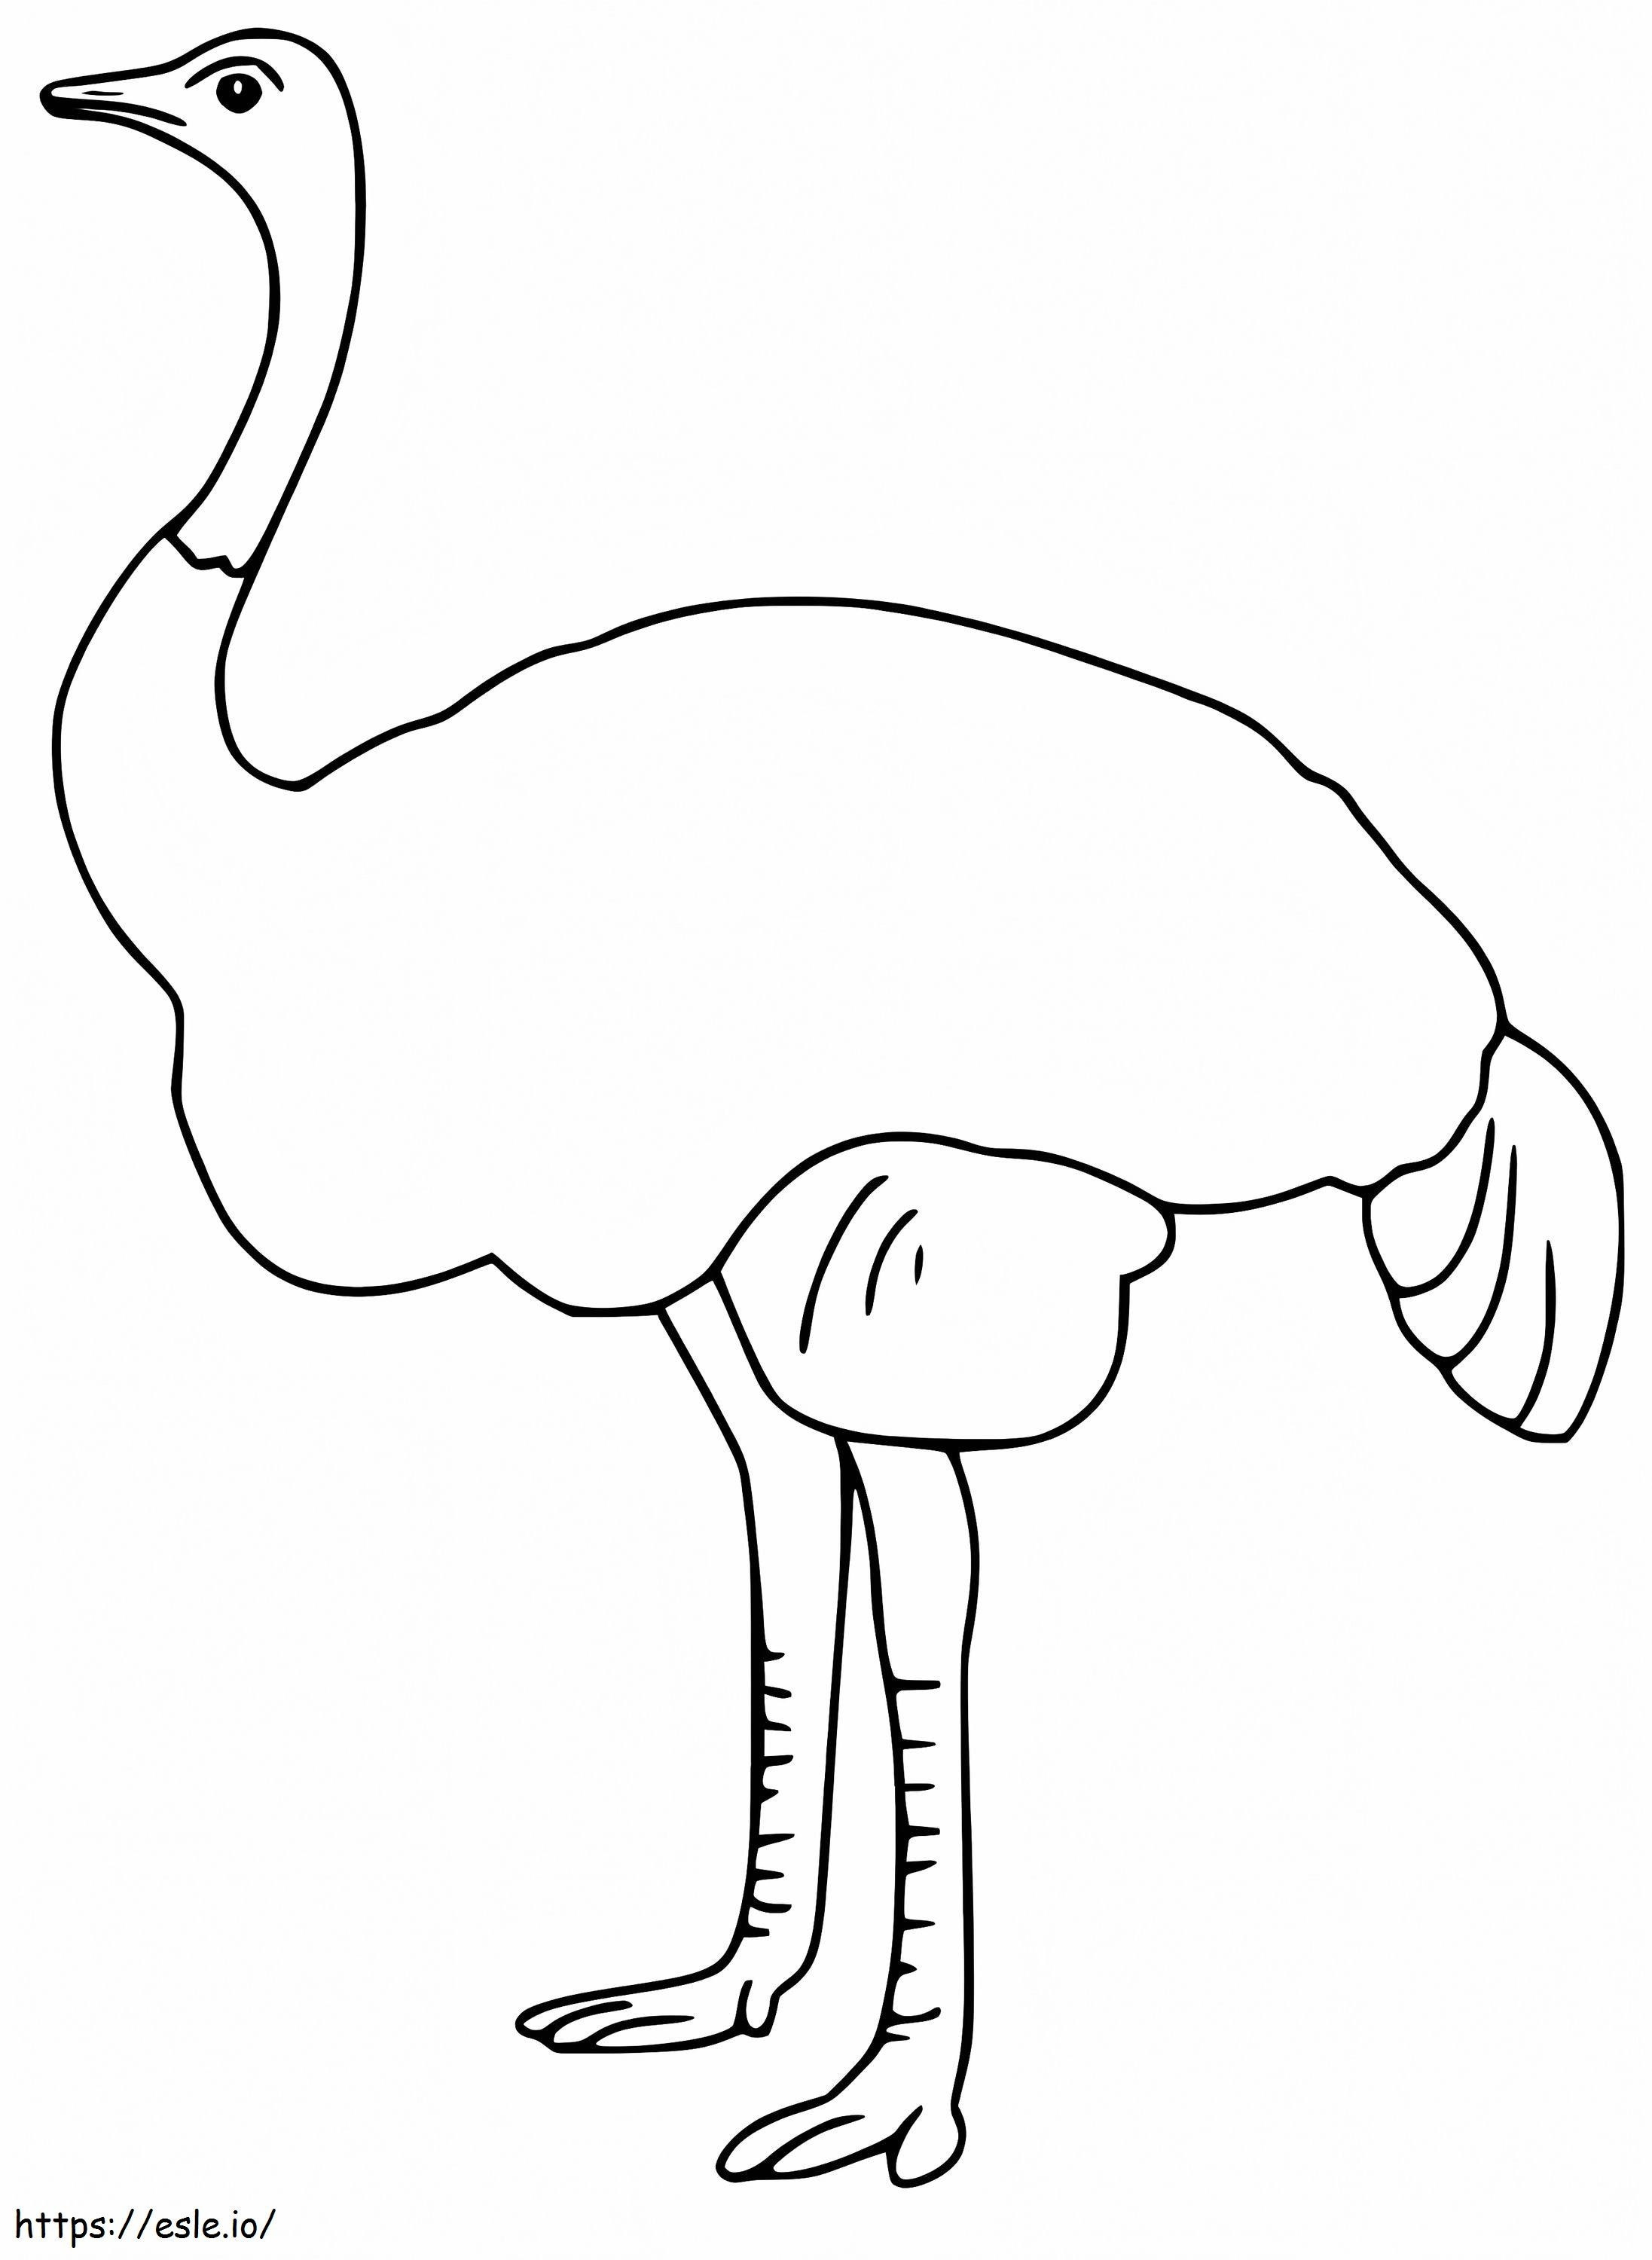 Un semplice emù da colorare